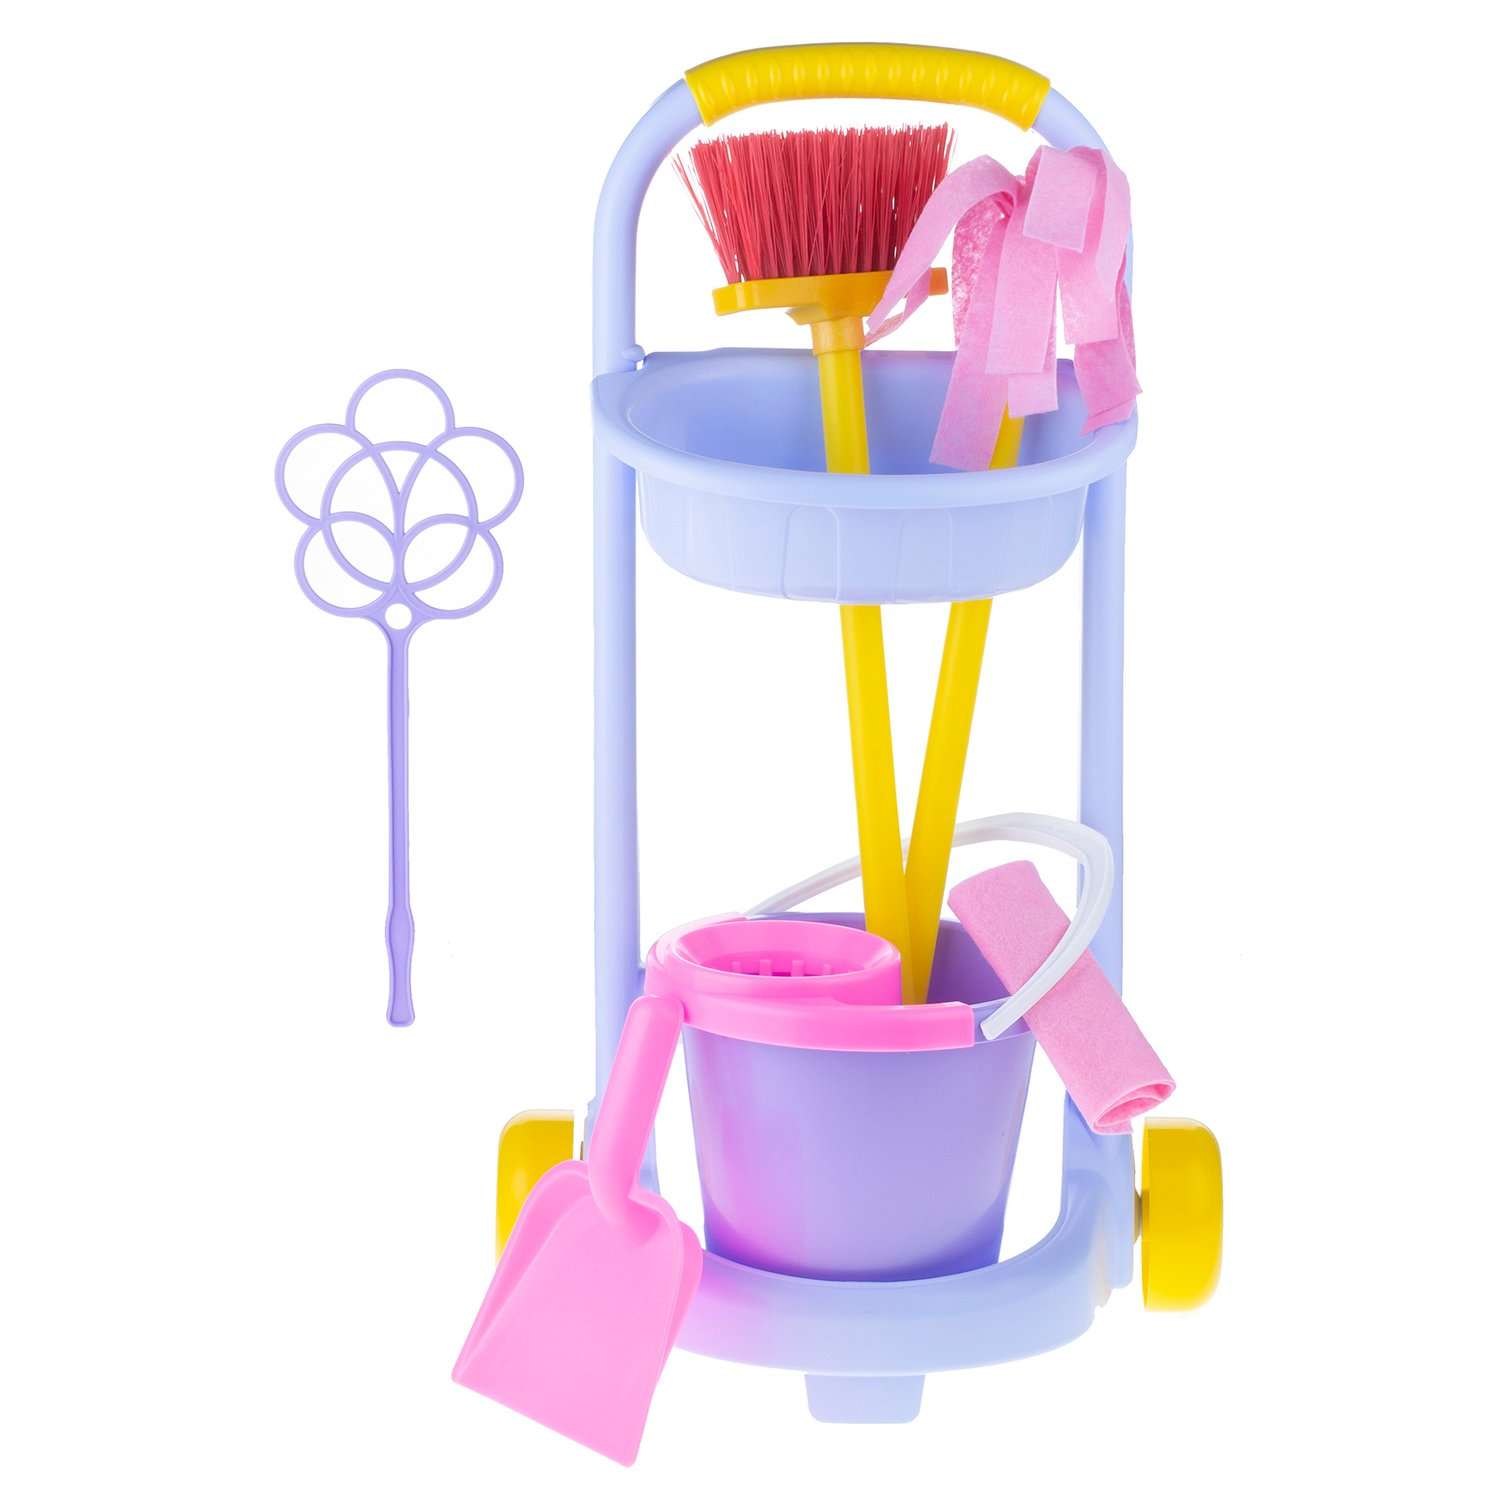 Бытовой игровой набор Стром хозяйственный для детей Золушка инвентарь для уборки Маленькая Хозяйка - фото 3